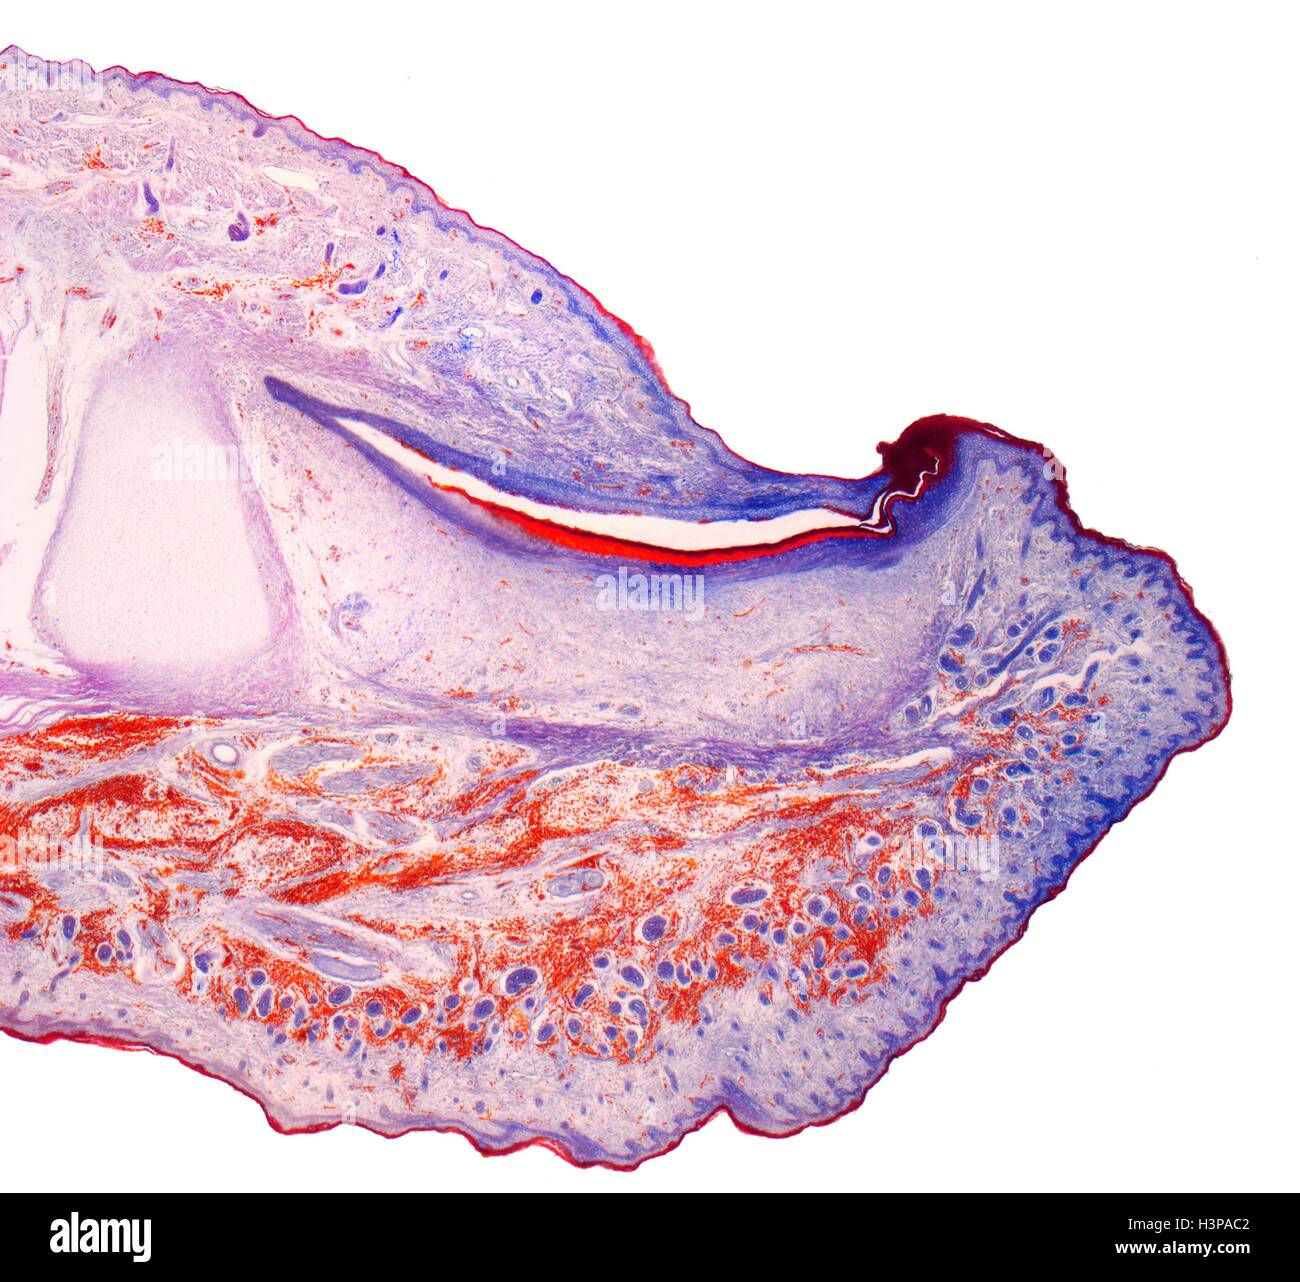 Il fingertip. Micrografia di luce (LM) di una sezione attraverso il fingertip. Il chiodo (arancione) è al centro superiore, con la radice delle unghie di seguito. Il letto ungueale è viola scuro ed è continuo con l'epitelio. La punta del dito di osso rosa pallido(centro sinistra). Al di sotto del epitelio squamoso stratificato è il derma, che contiene tessuto adiposo (FAT) cellule del tessuto connettivo e vasi sanguigni. Ingrandimento: x5 quando stampata a 10 cm di larghezza. Foto Stock